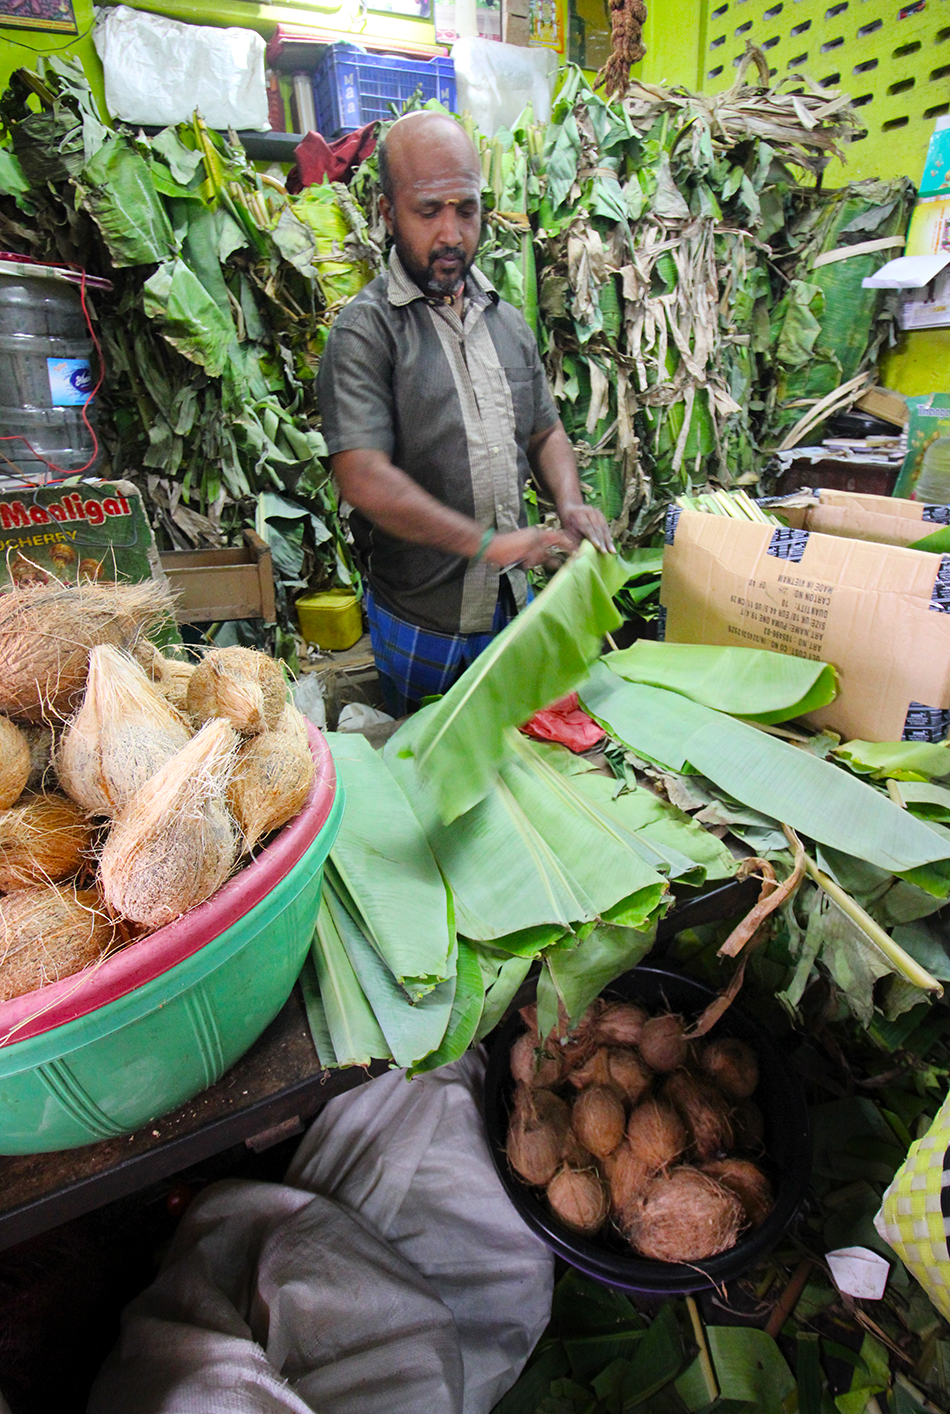 Inside Goubert Market in Pondicherry, Tamil Nadu, India